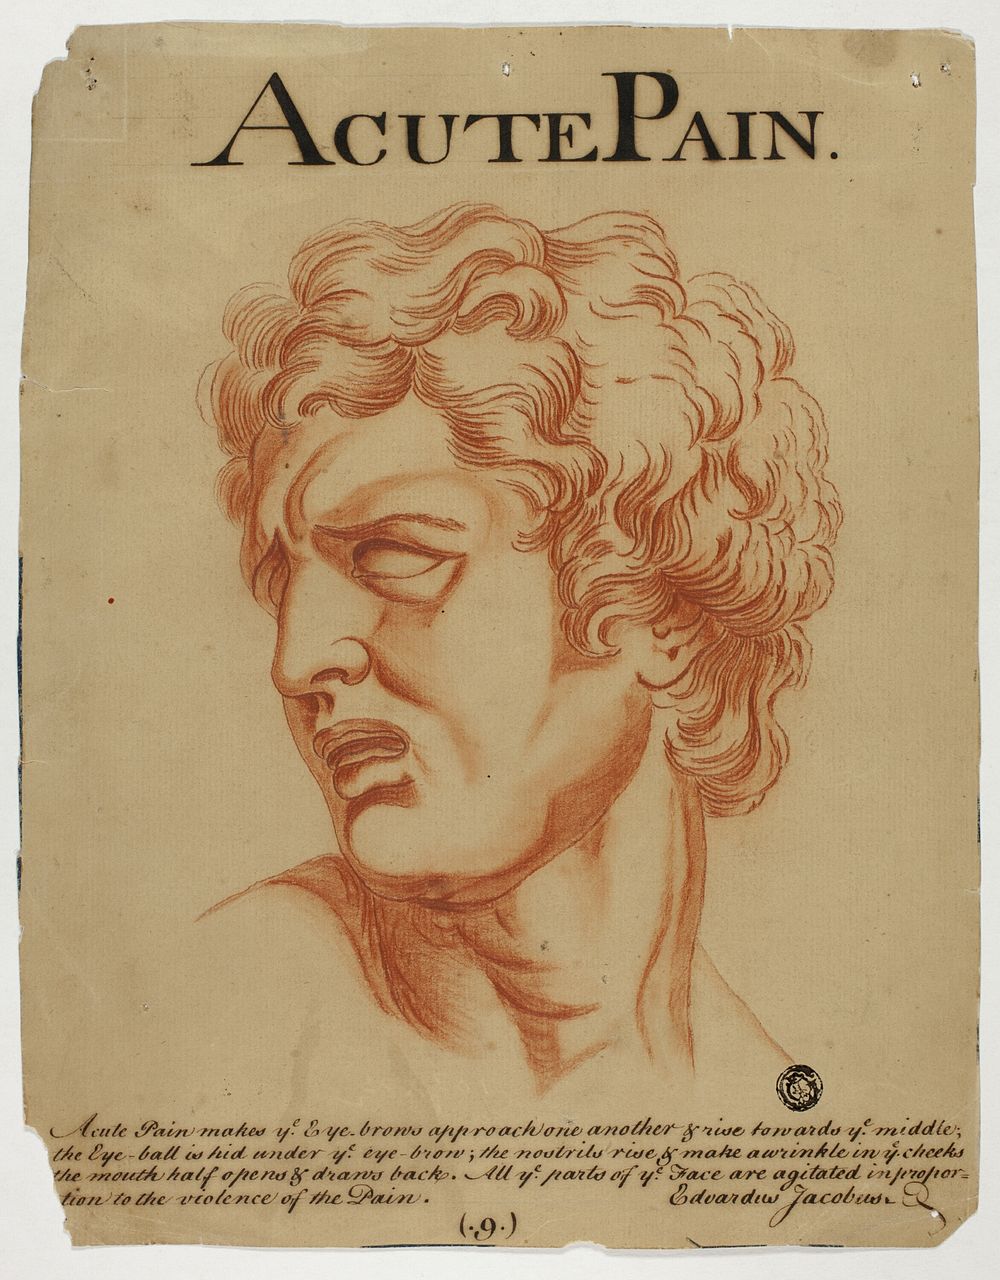 Acute Pain by Eduardus Jacobus